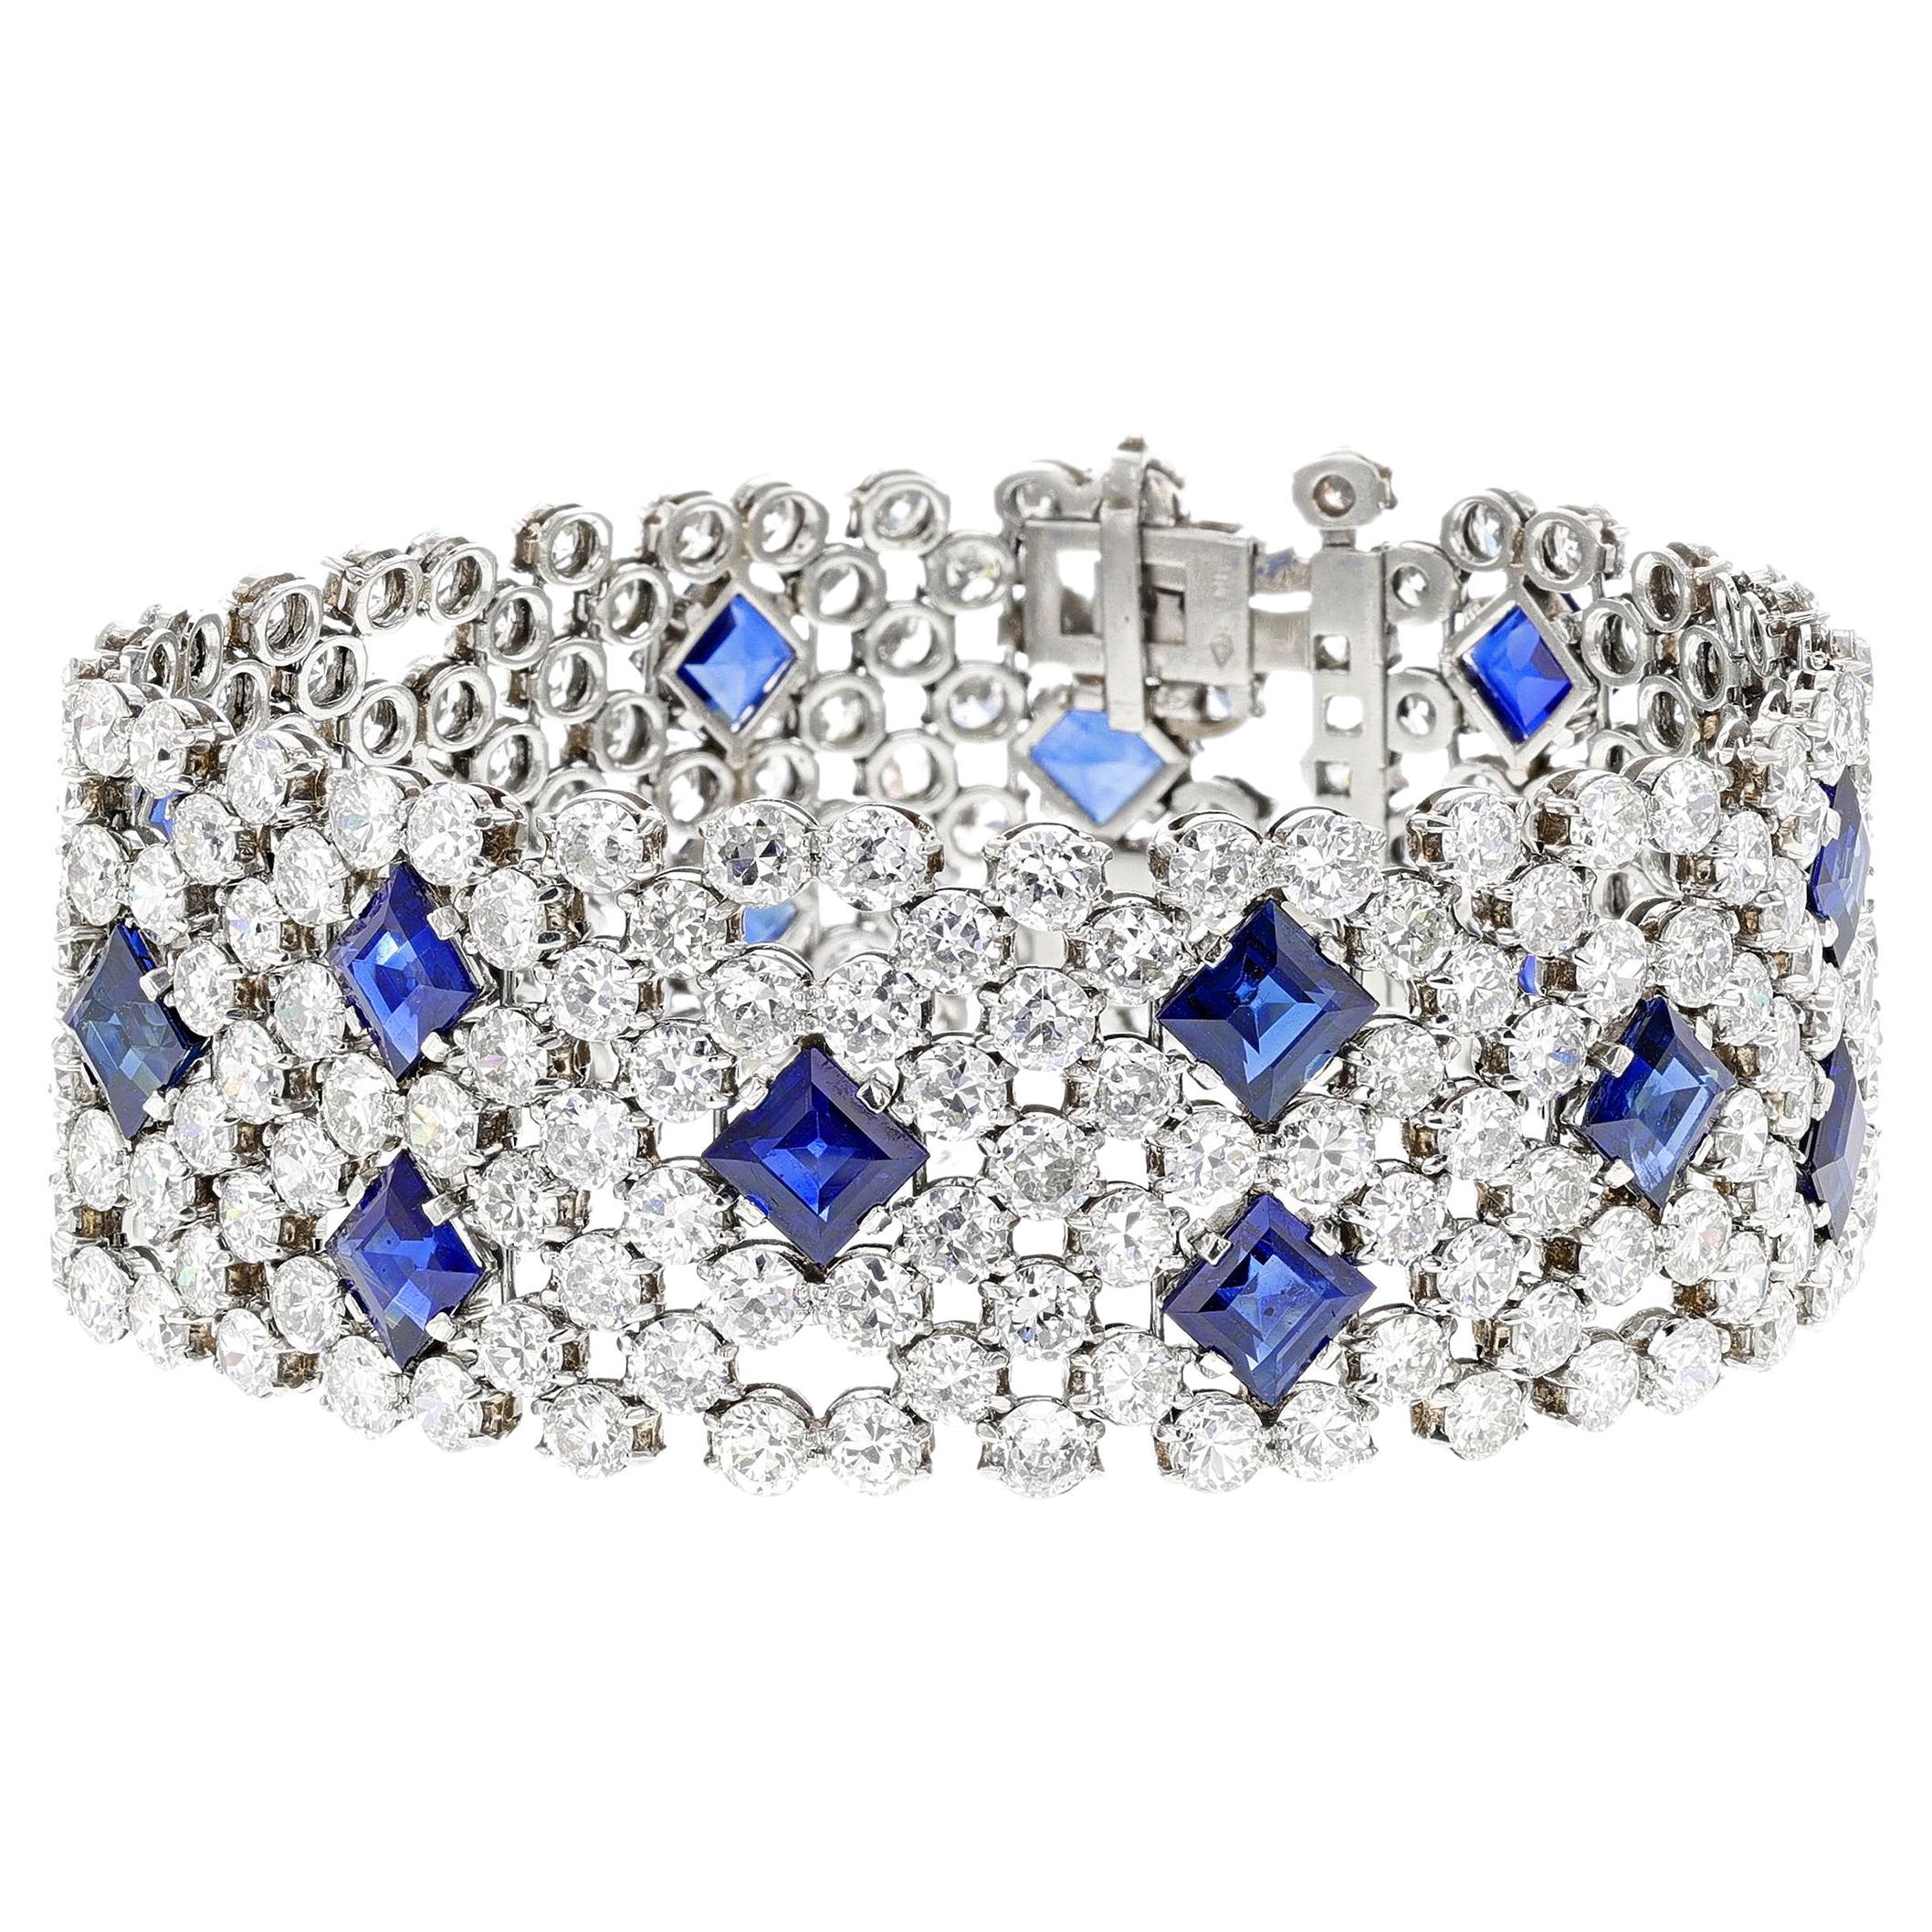 Un superbe bracelet en saphir bleu et diamant réalisé en platine par Charles Holl, un créateur de bijoux français pour Cartier et Van Cleef & Arpels. Le bracelet pèse environ 64,59 grammes. La longueur est de 7,10 pouces et la largeur de 0,90